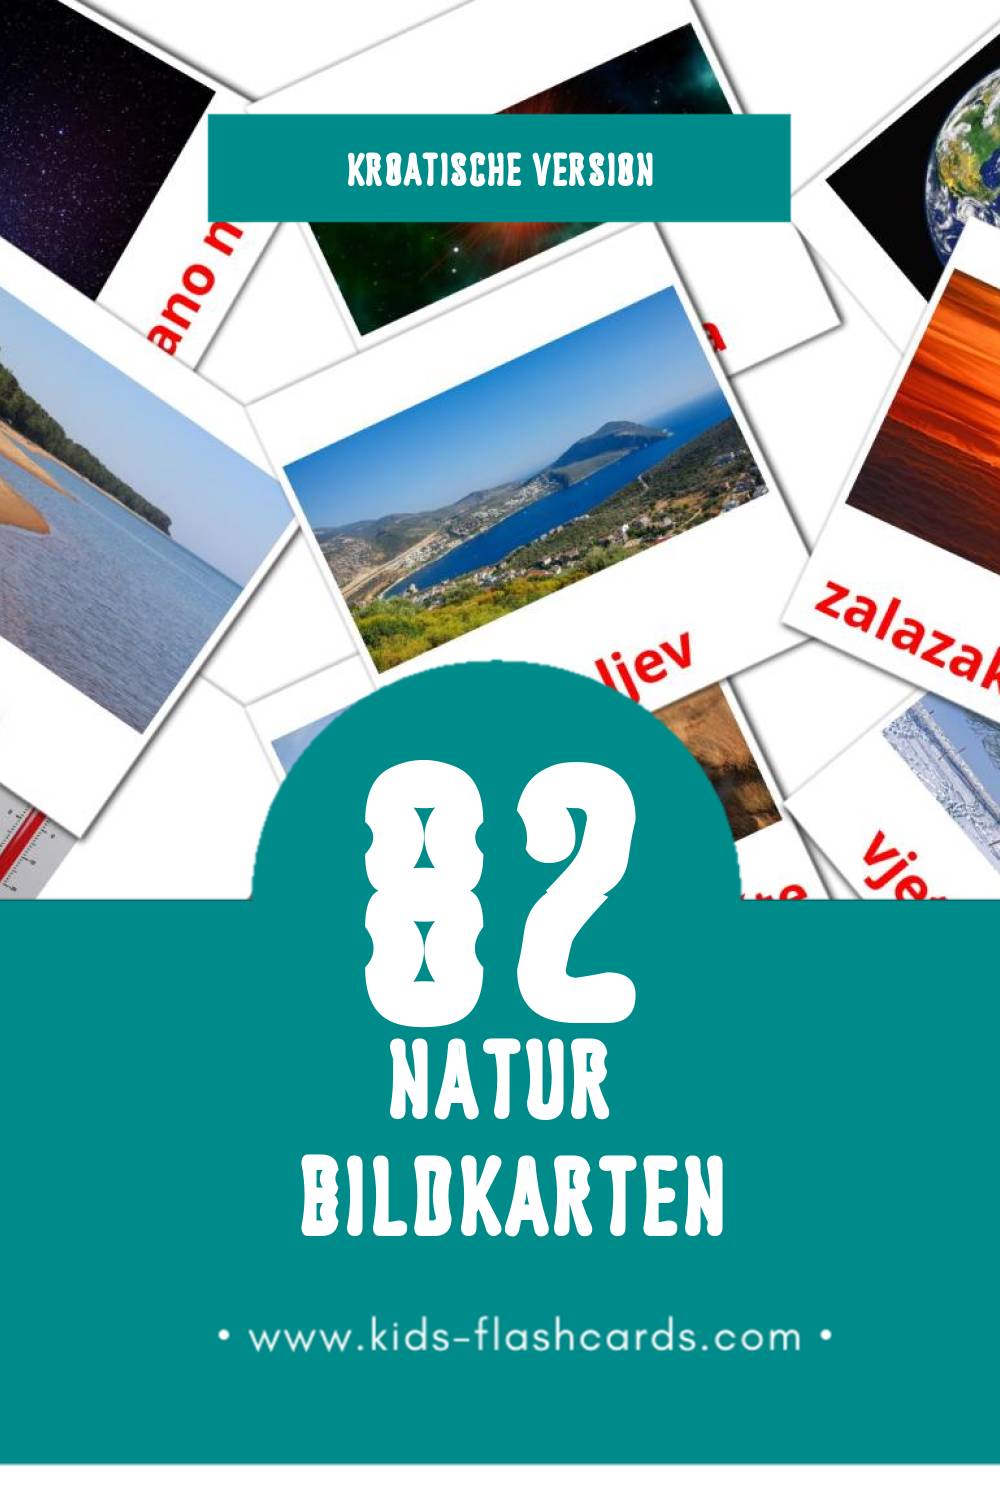 Visual Priroda Flashcards für Kleinkinder (82 Karten in Kroatisch)